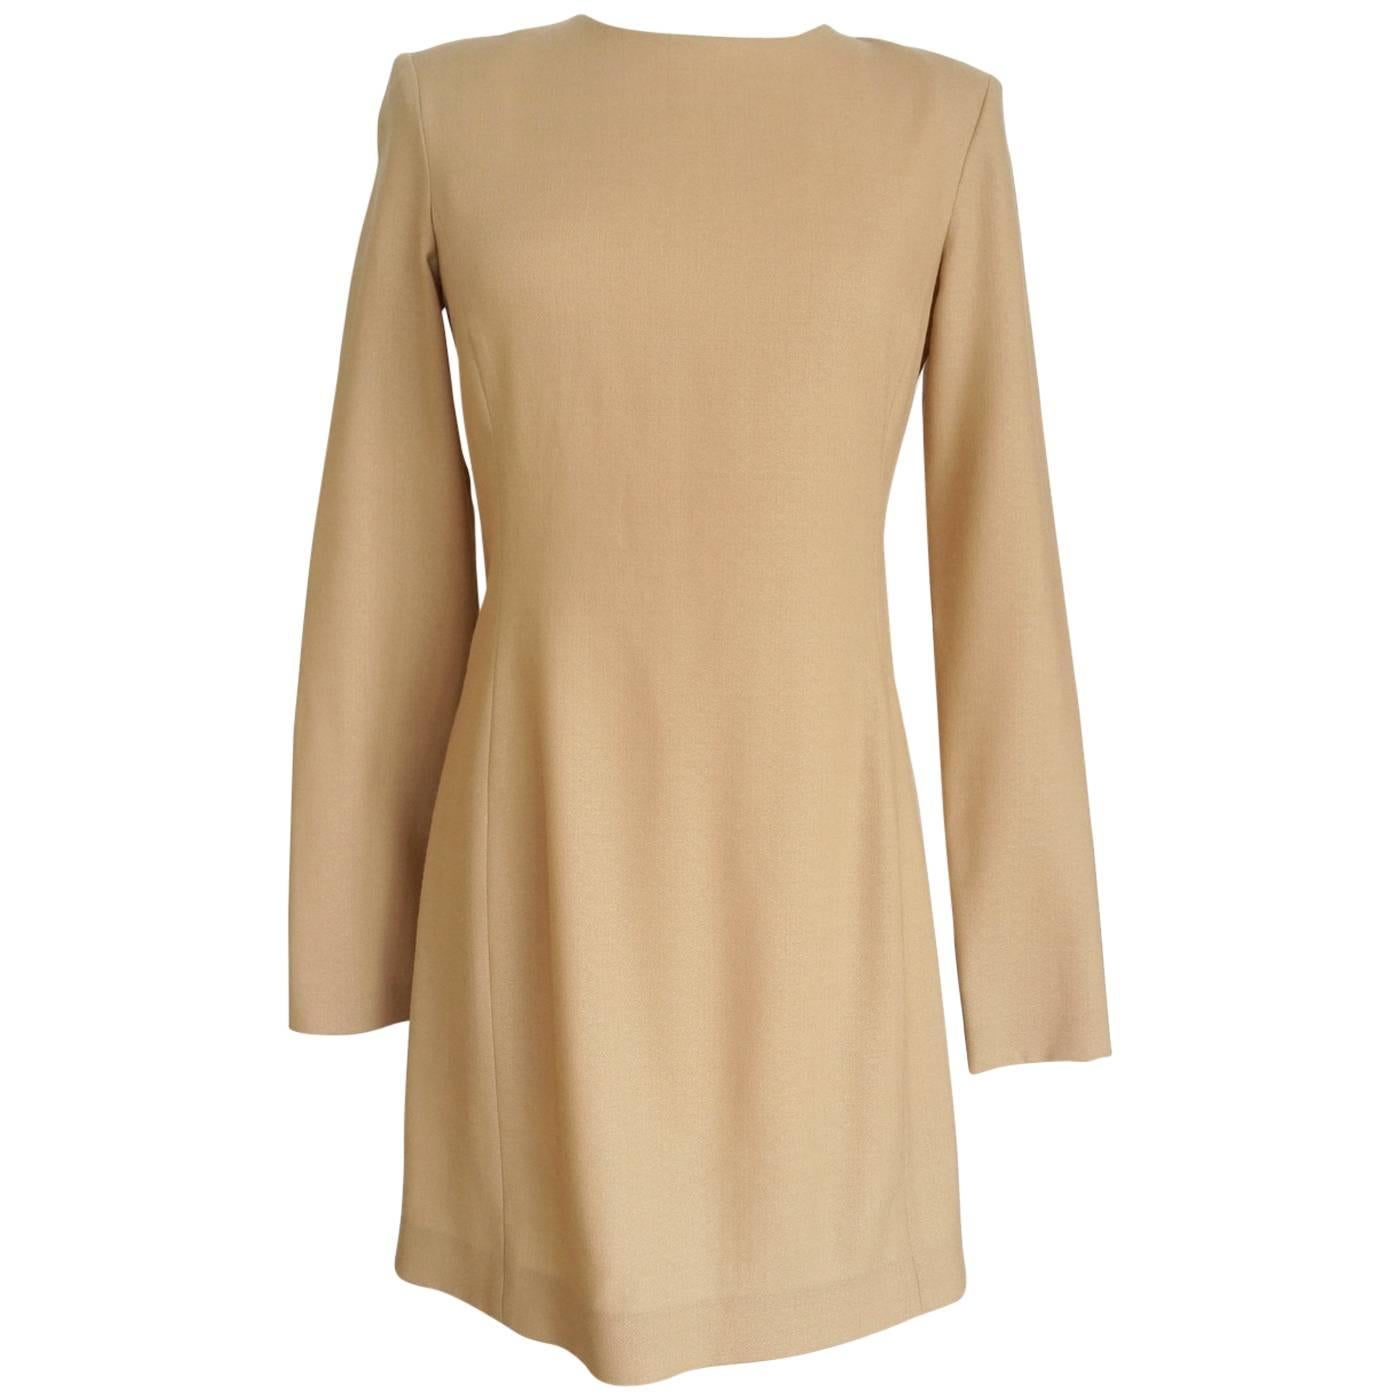 THE ROW Dress Sleek Long Sleeve Camel 8 fits 6 Versatile mint